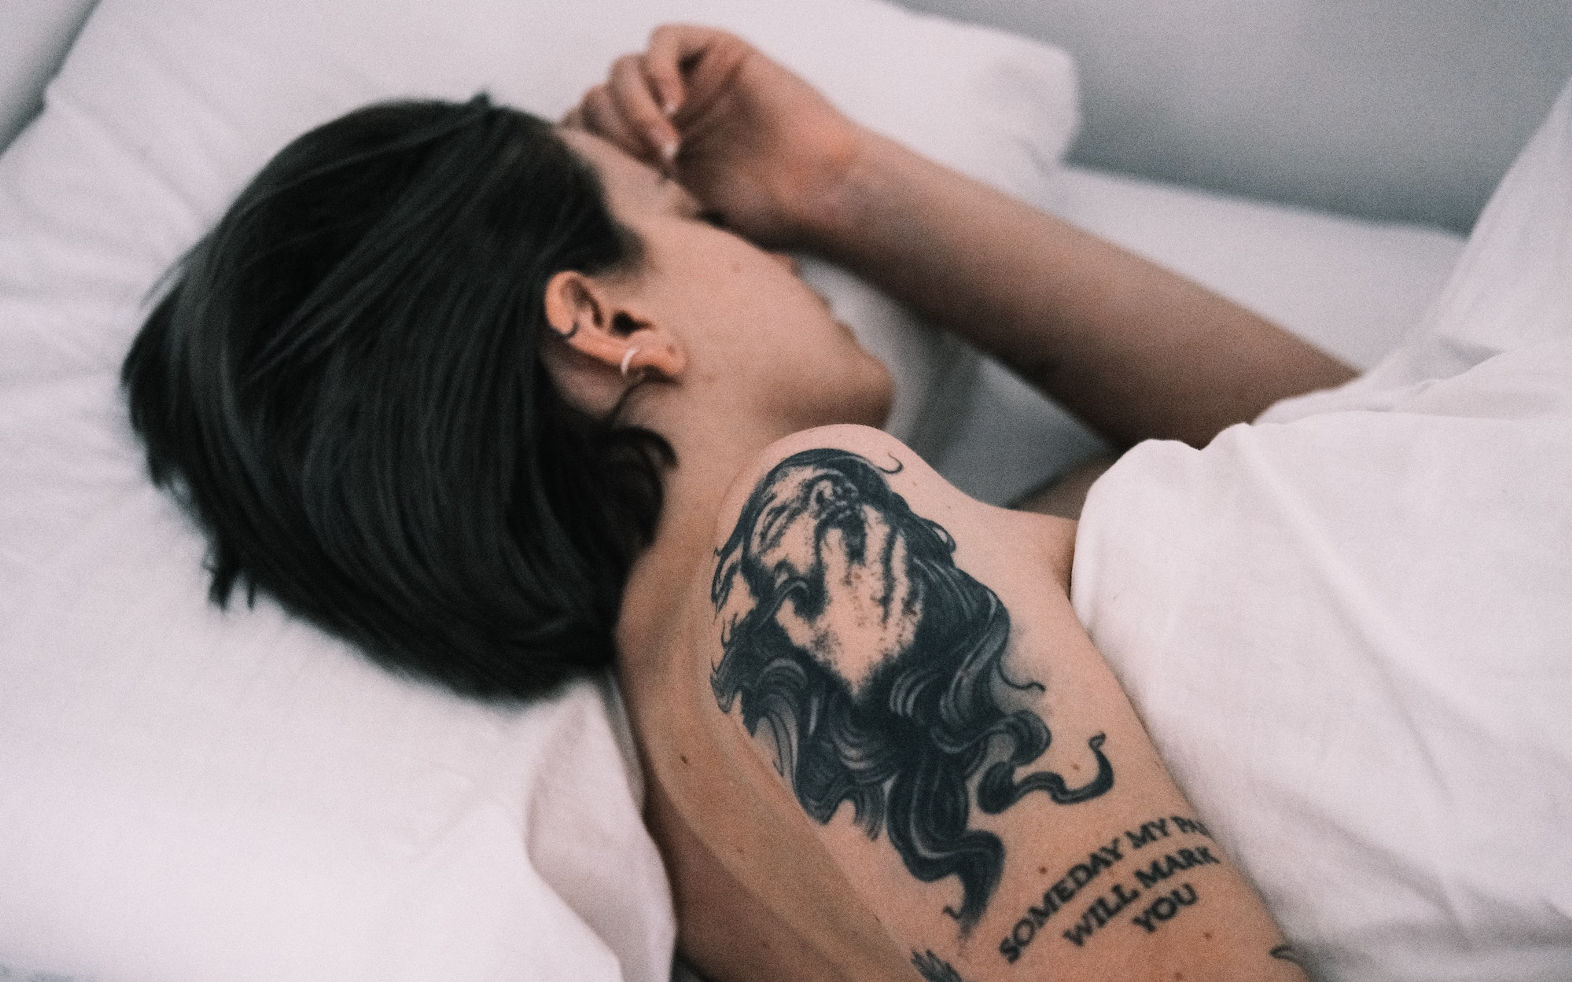 Bild av en person med tatueringar som sover naken i sängen